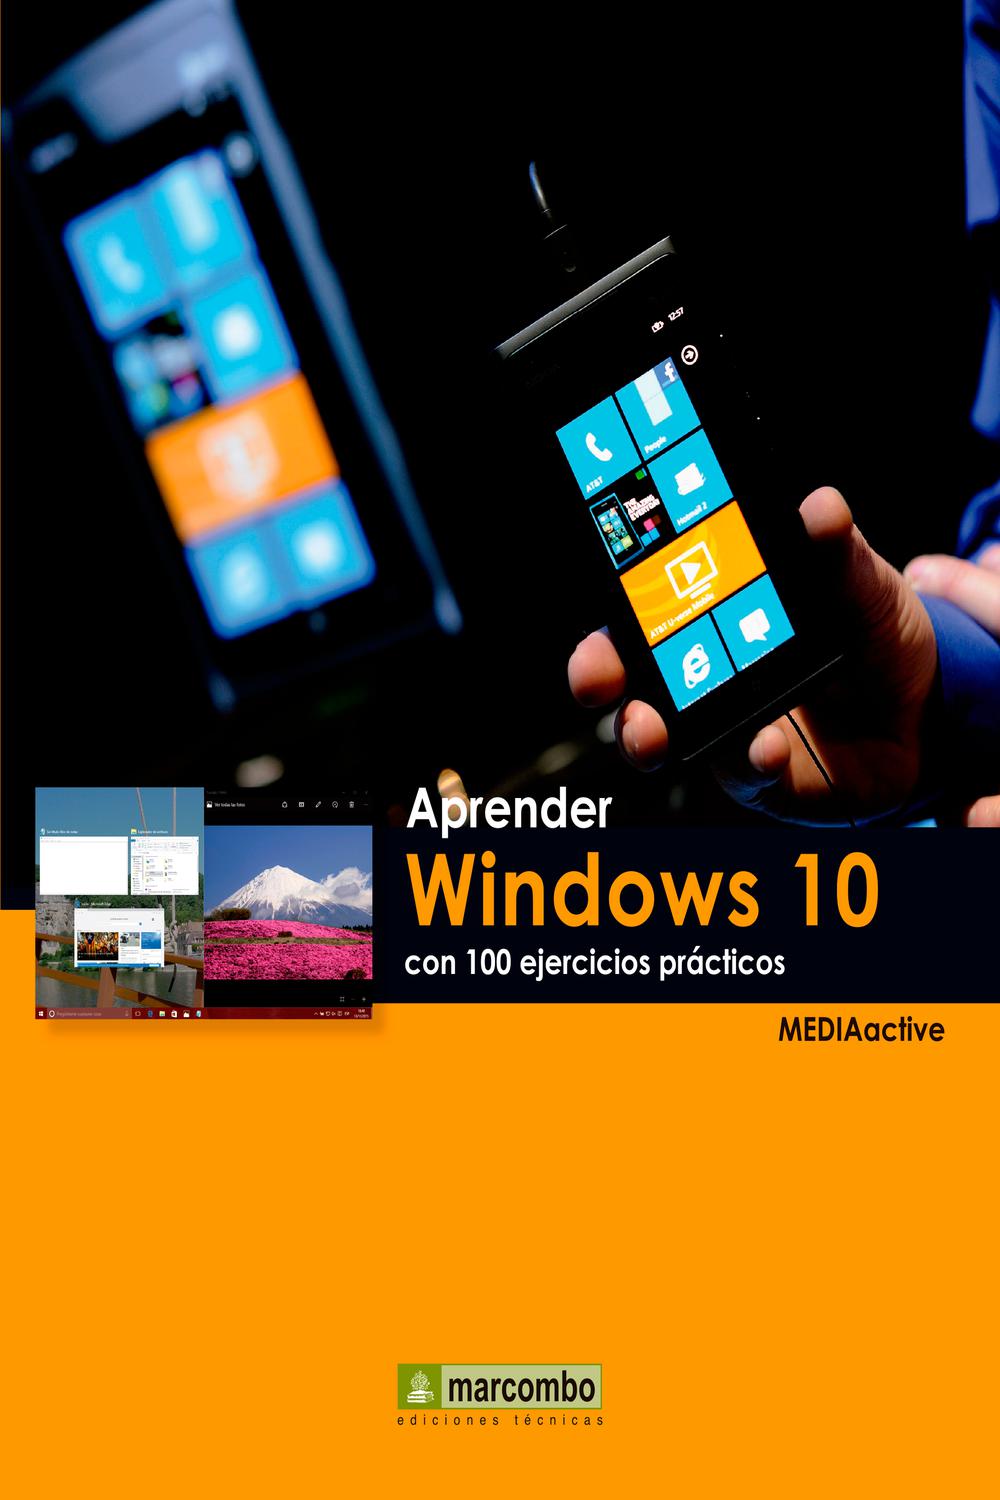 Aprender Windows 10 con 100 ejercicios prácticos - MEDIAactive